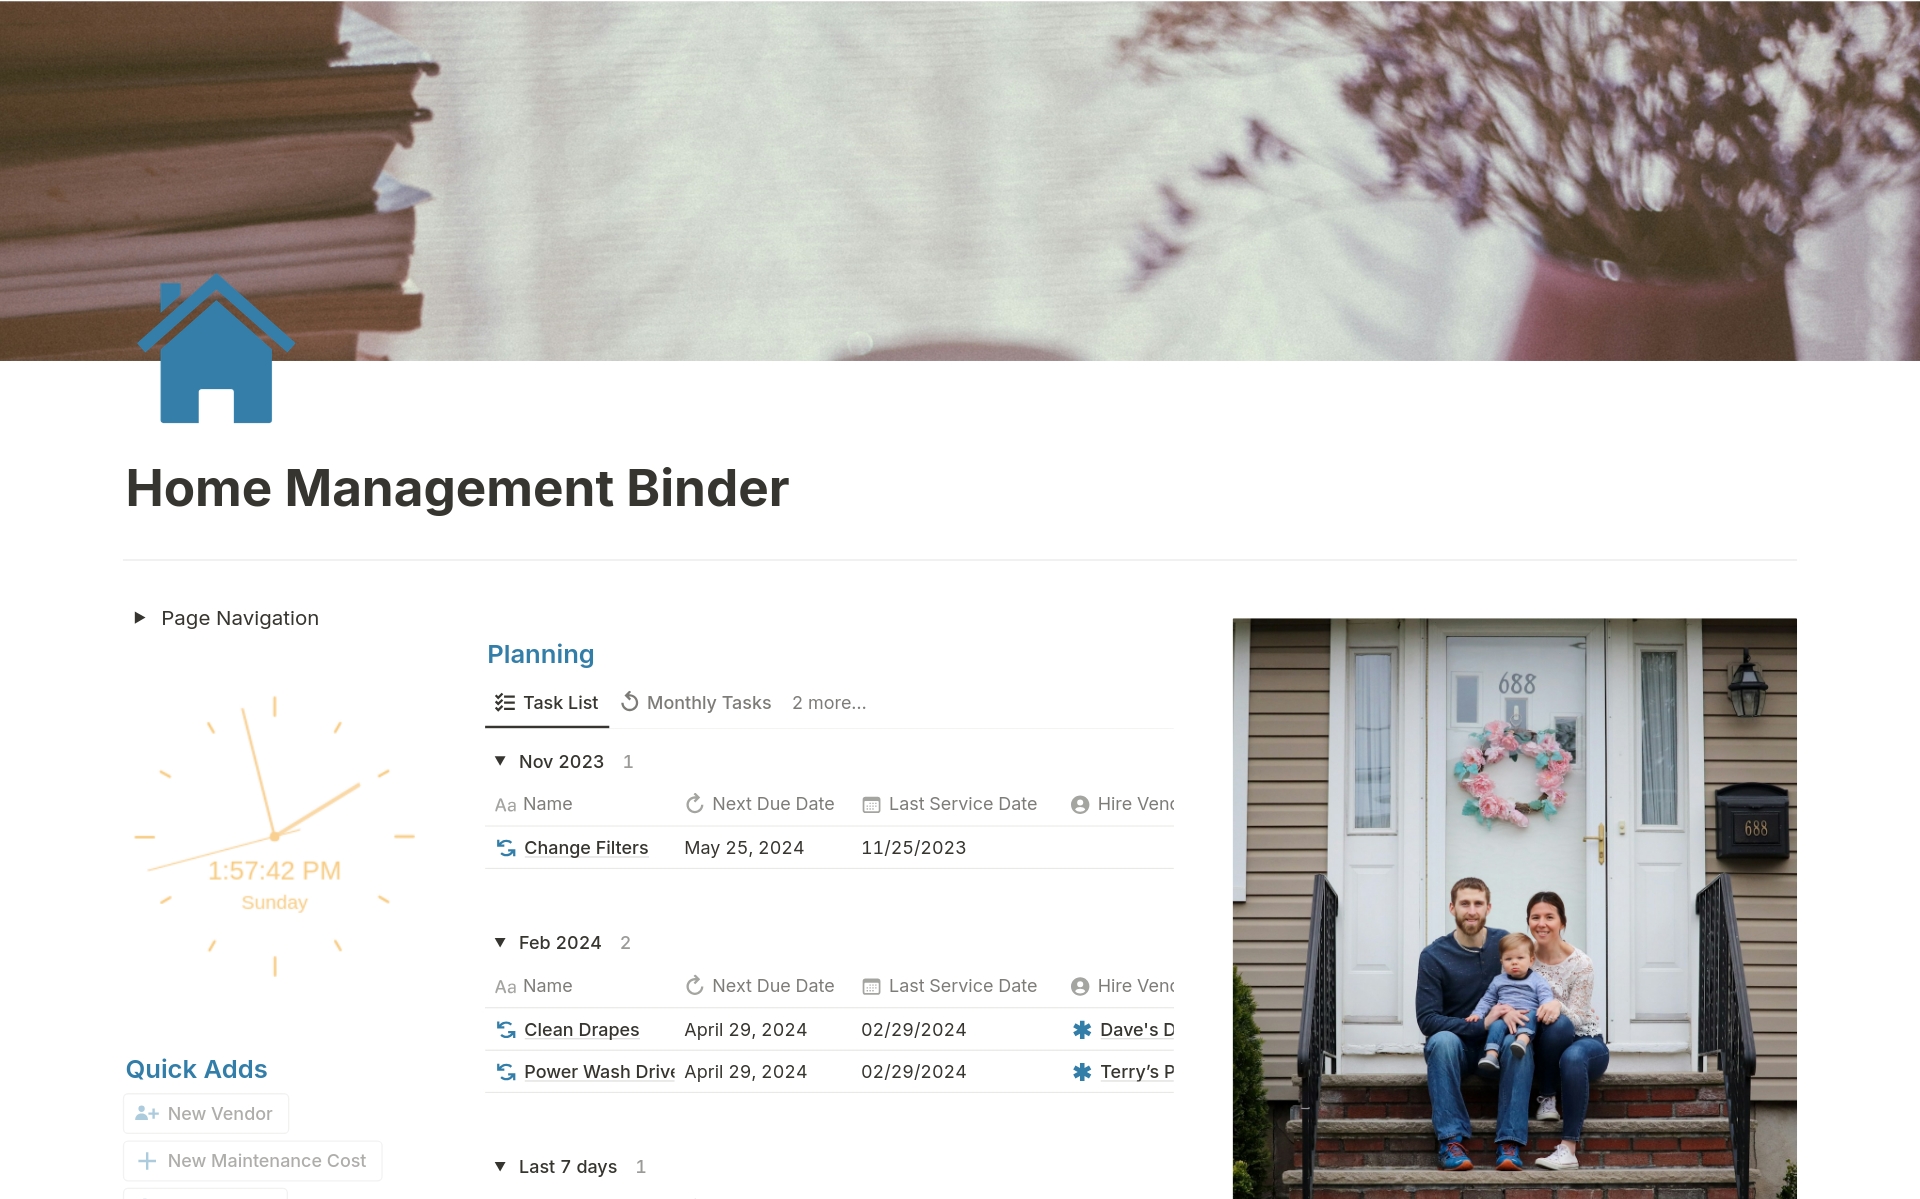 Uma prévia do modelo para Home Management Binder